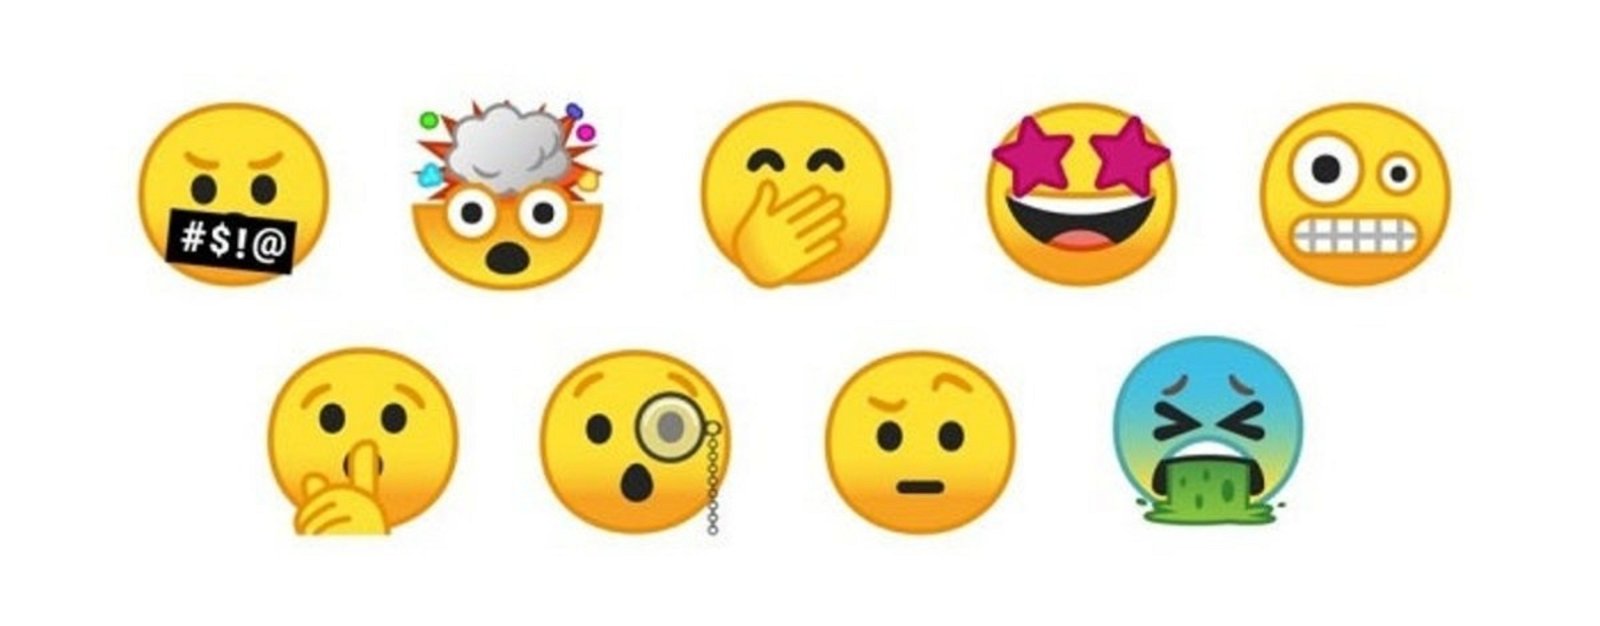 emojis unicode 10.0 nuevos